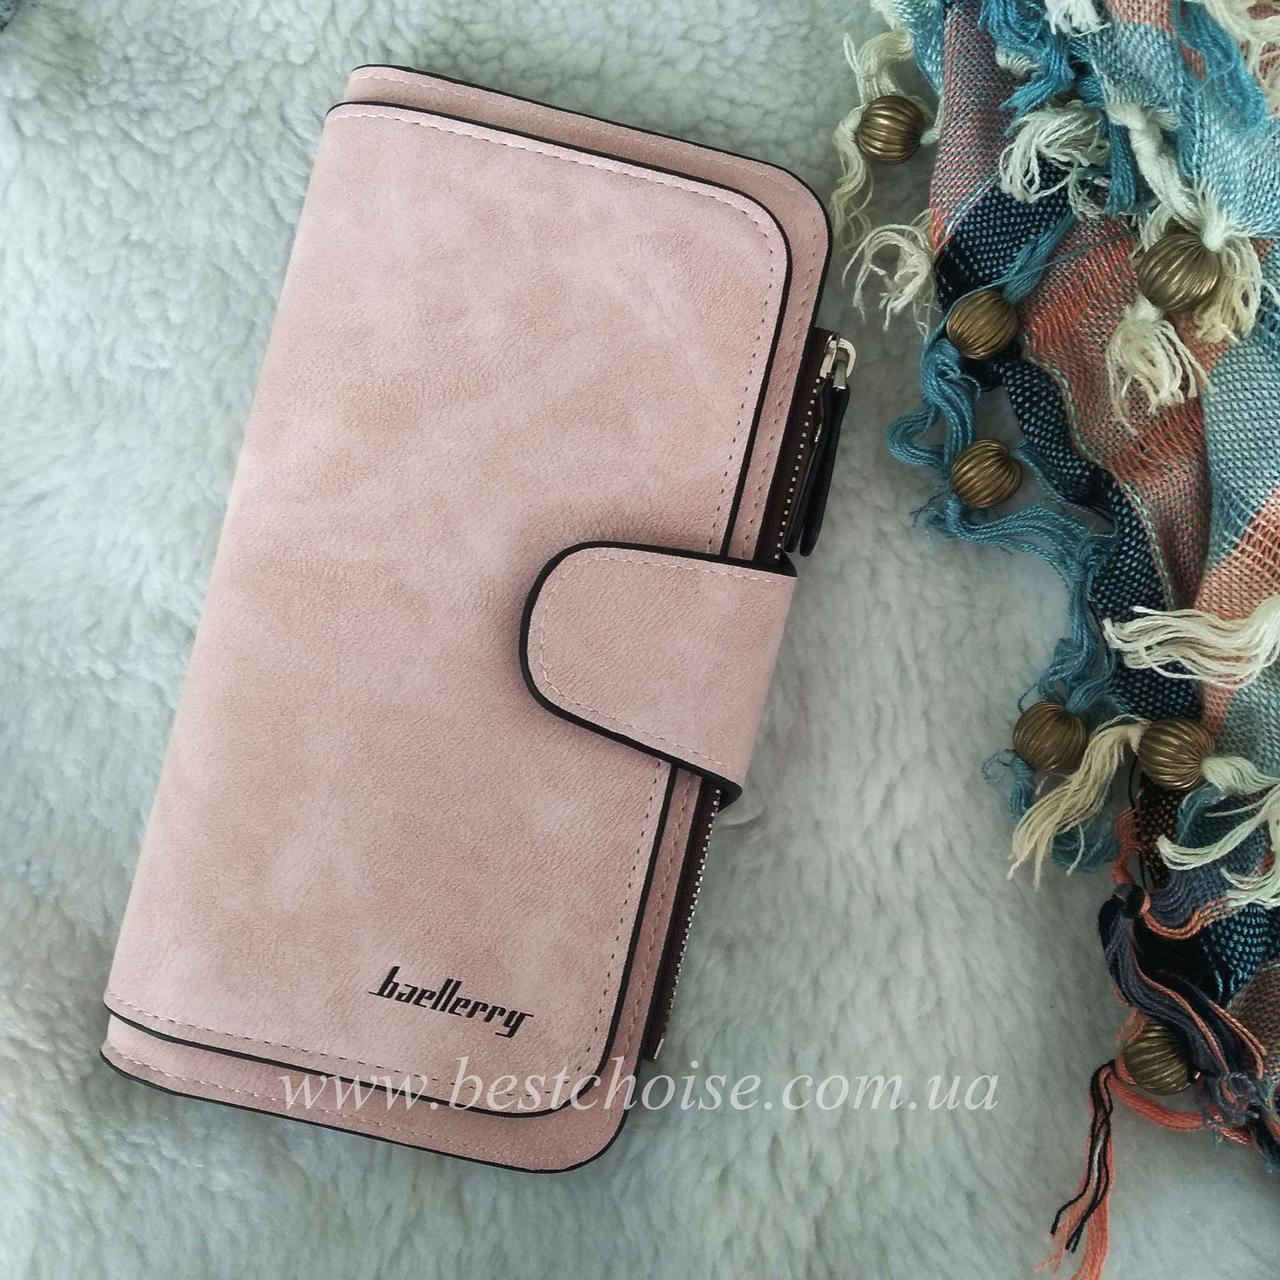 Пудровий (ніжно рожевий) Baellerry Forever. Жіночий стильний гаманець — клатч з екозамші.